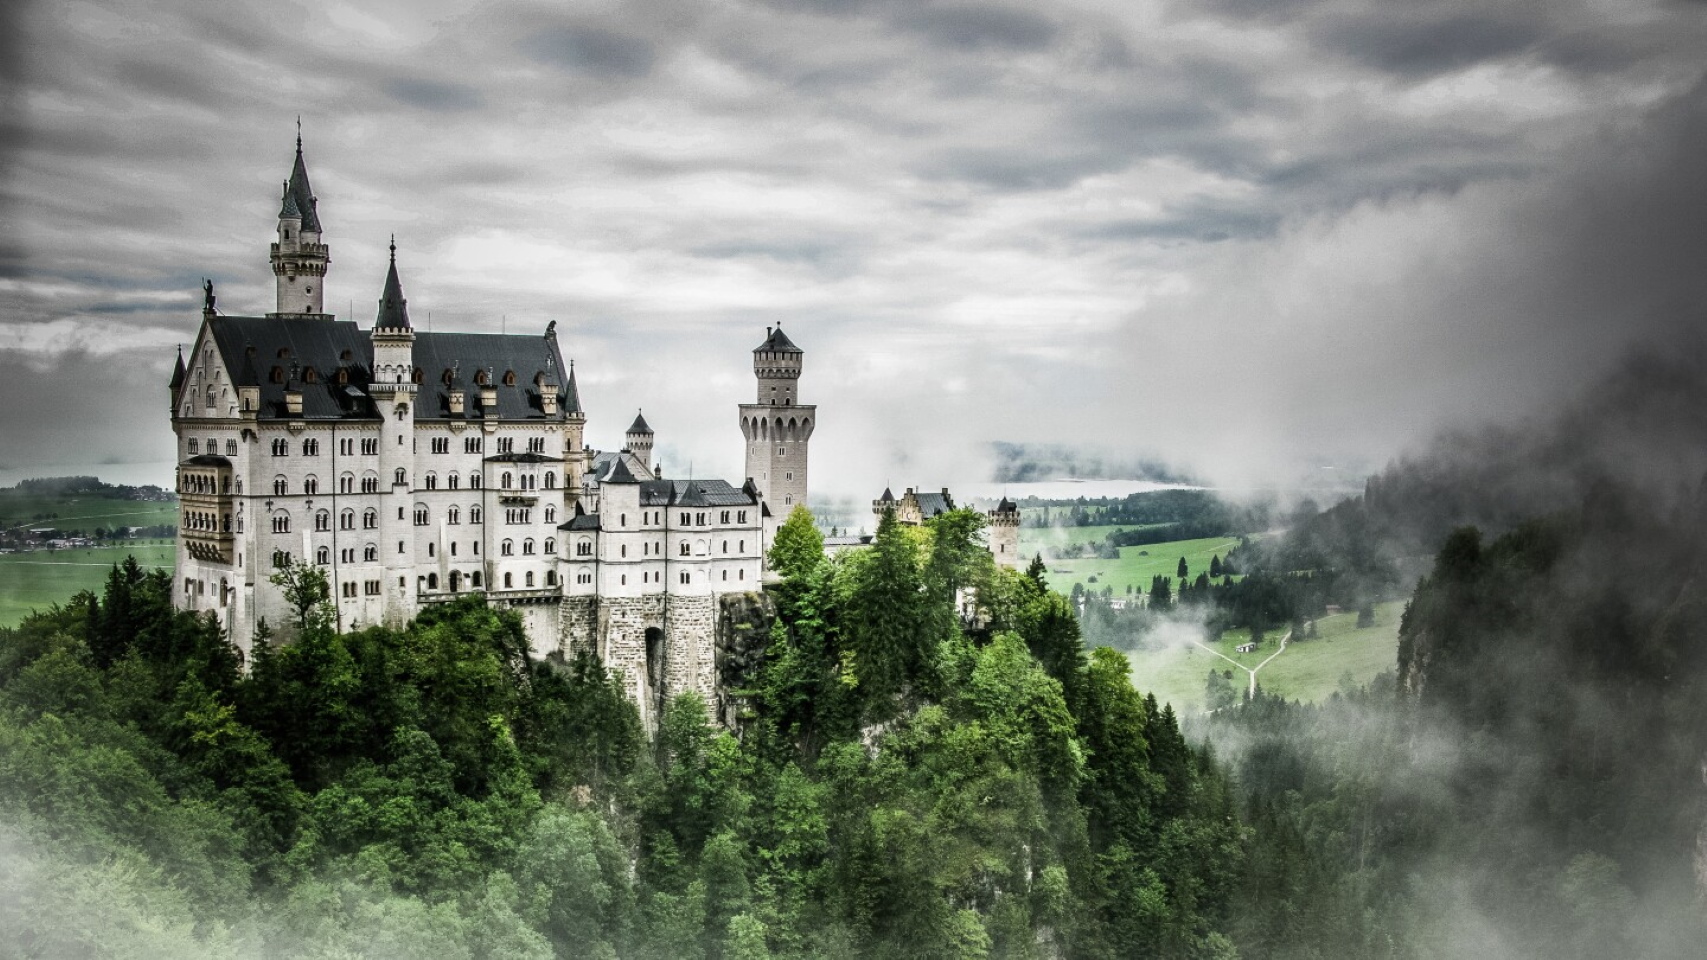 В финальном списке. Замок Нойшванштайн, Бавария. Построен в конце 19 века и известен как источник вдохновения для нескольких замков Диснея. Фото: Michael Welch